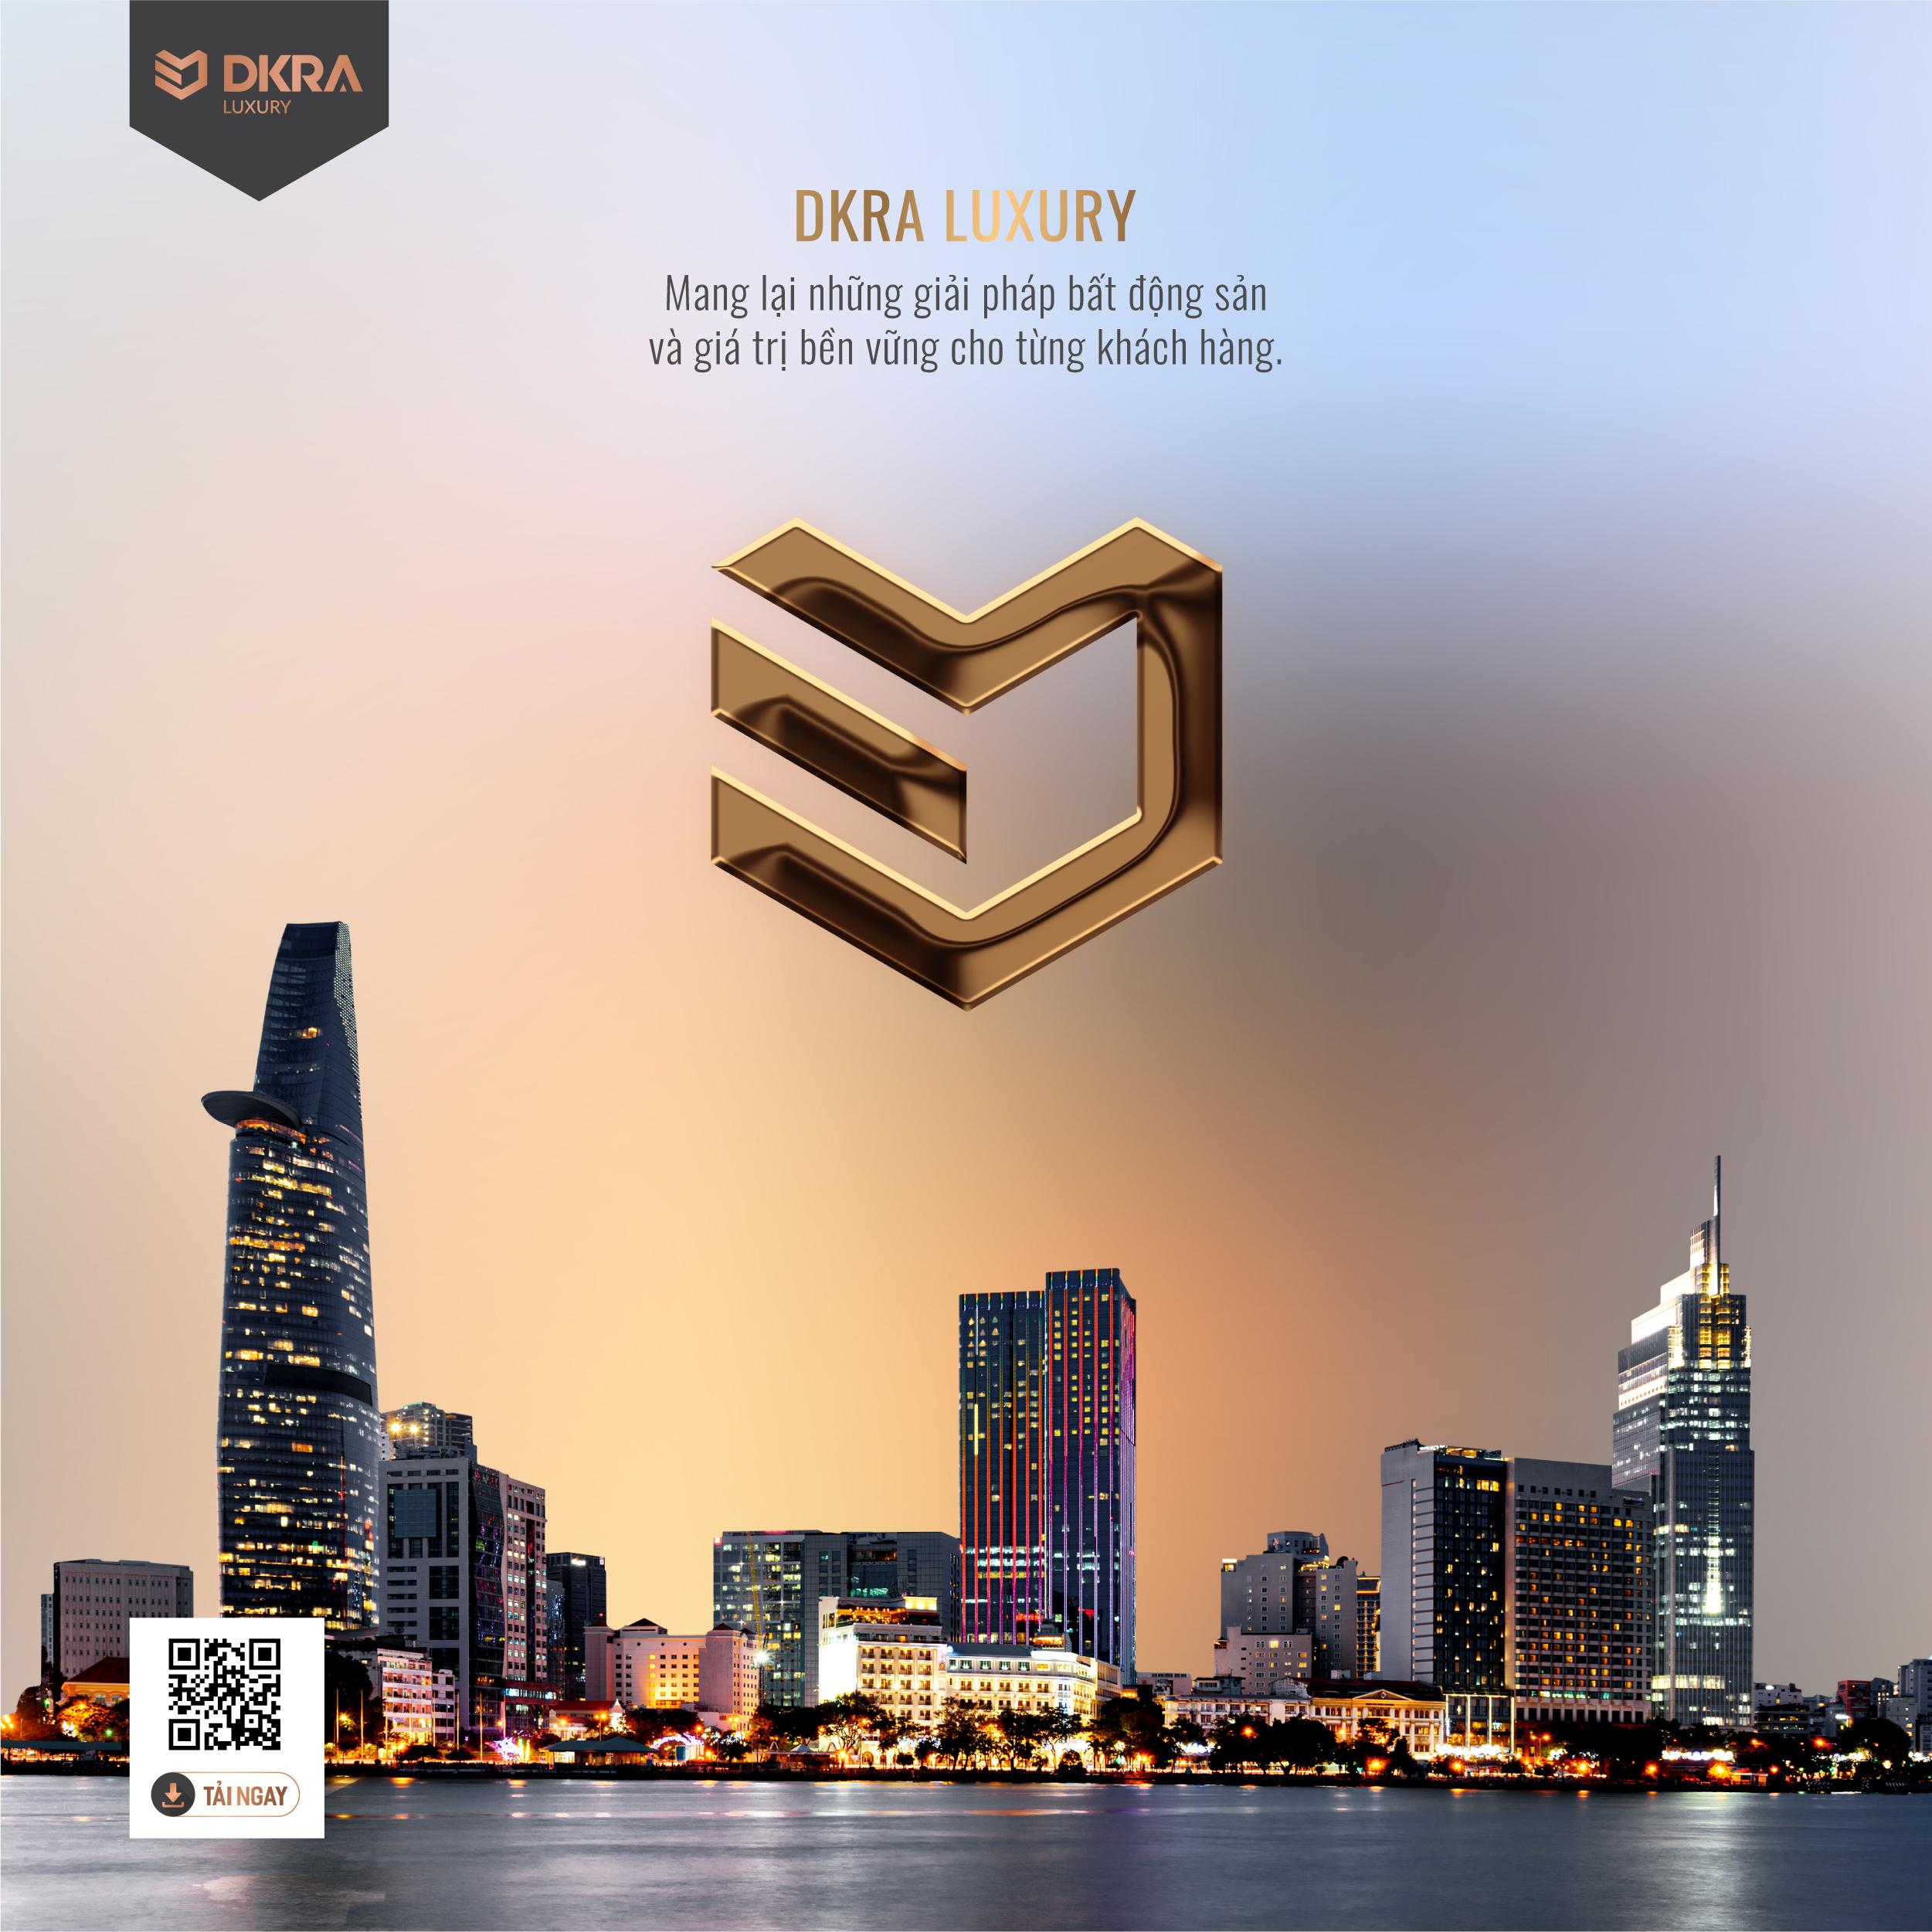 DKRA Luxury mang lại những giải pháp bất động sản và giá trị bền vững cho từng khách hàng